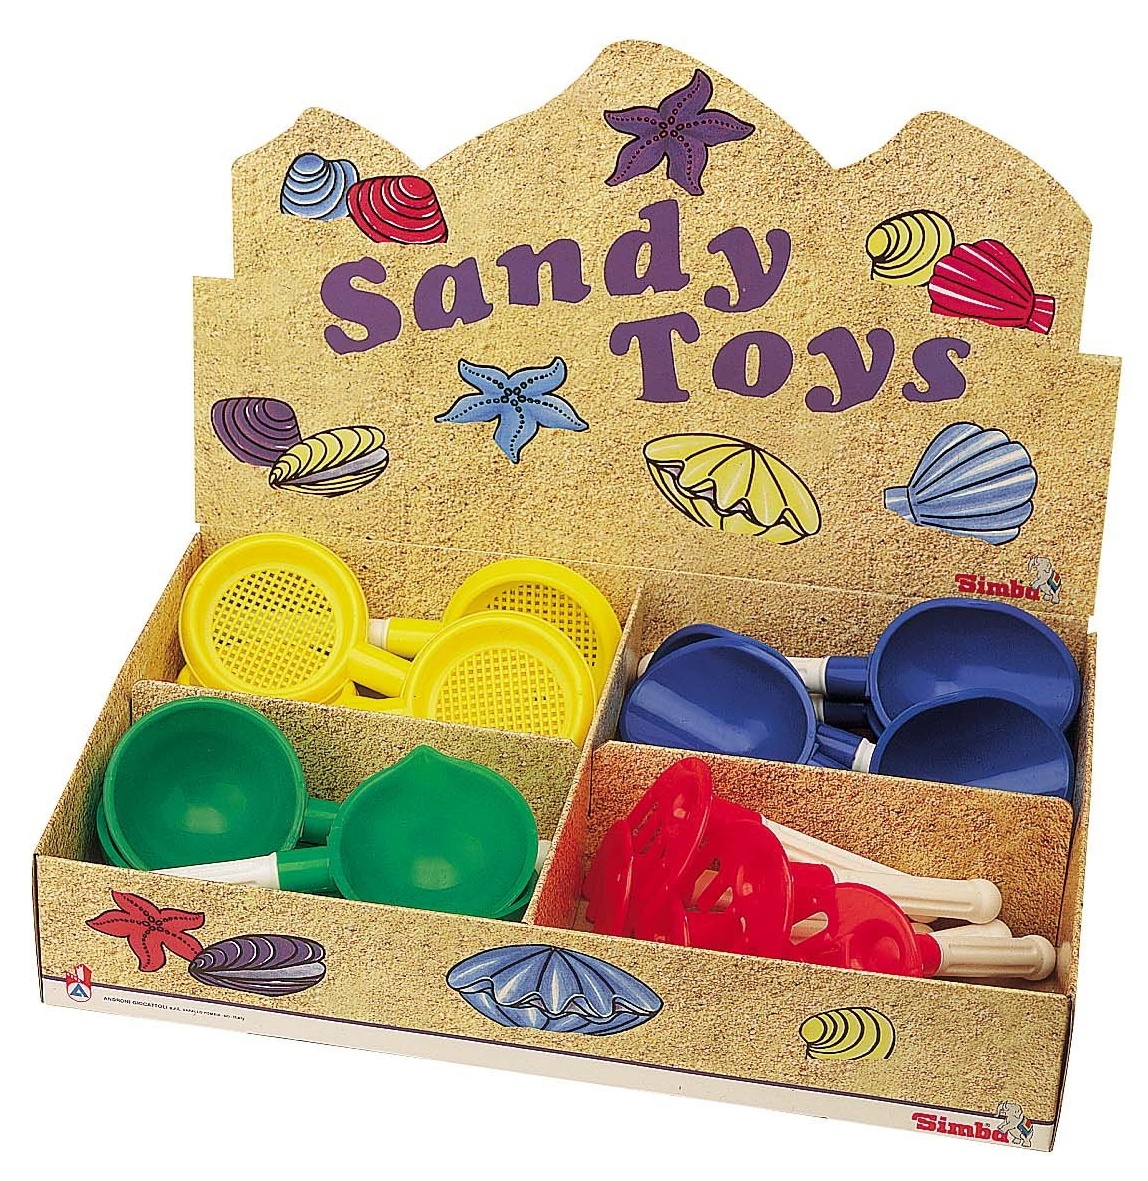 Набор игрушек для песочницы Androni 24pcs (4350-00)